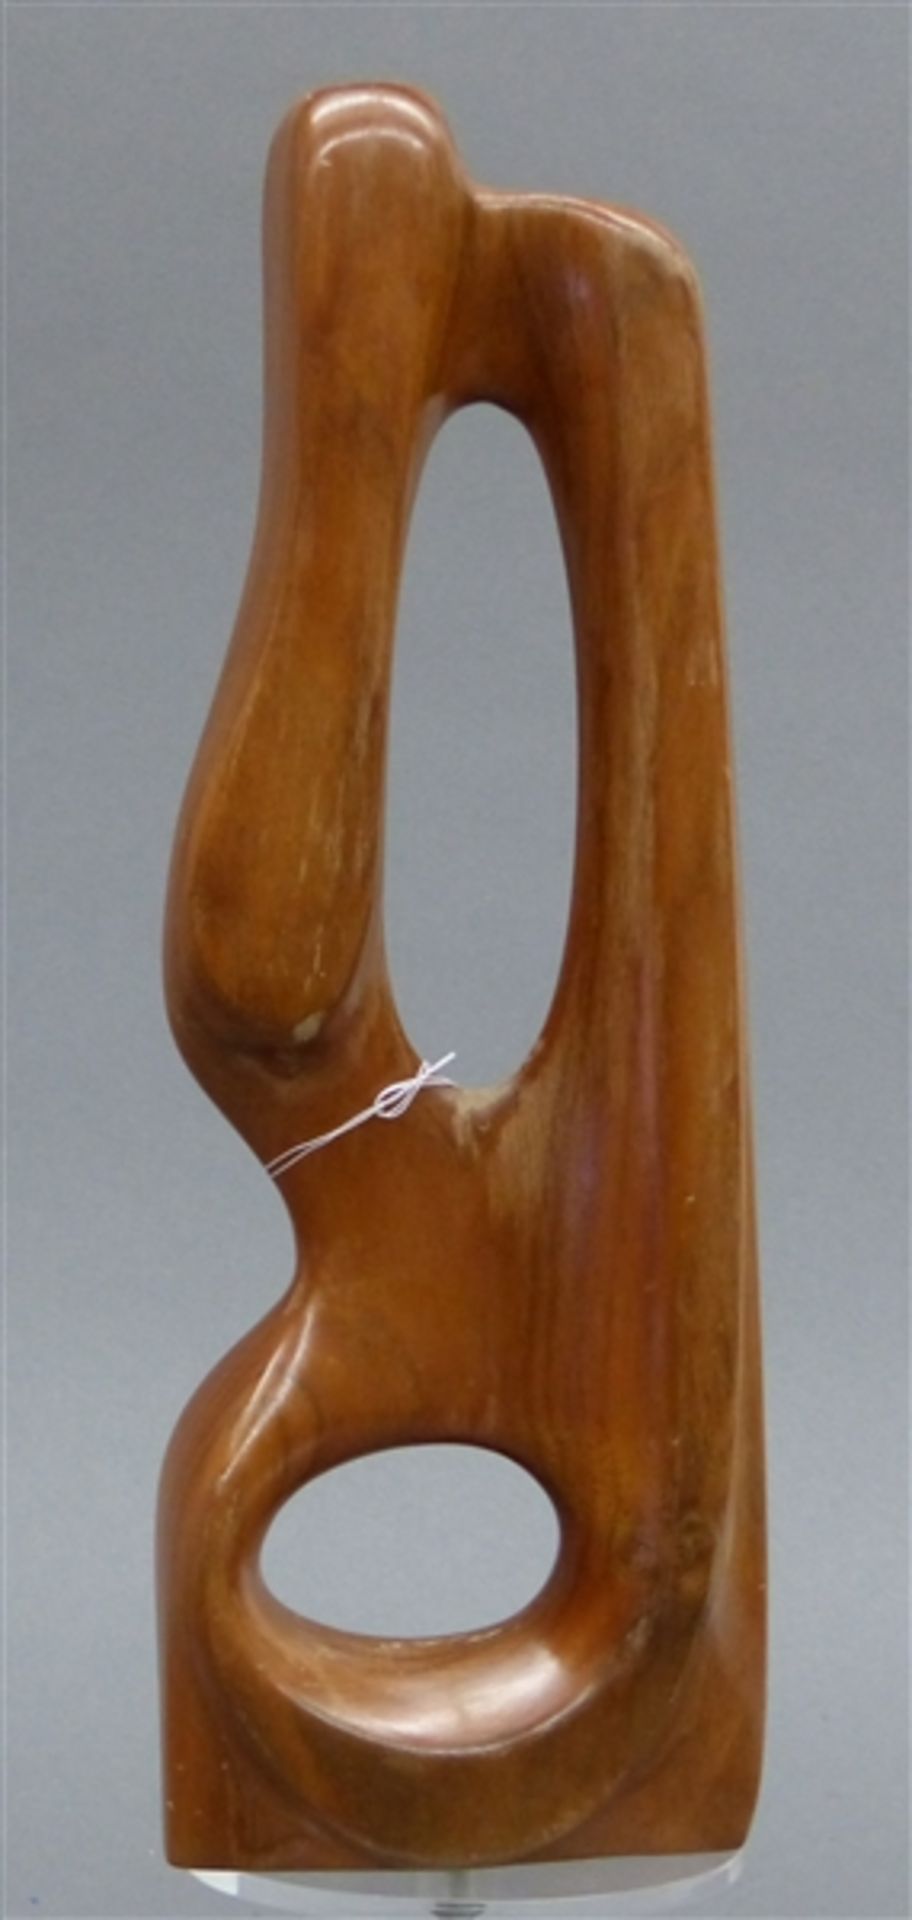 HolzskulpturTeakholz, moderne Form, signiert Böh und datiert (19)77, h 31 cm,